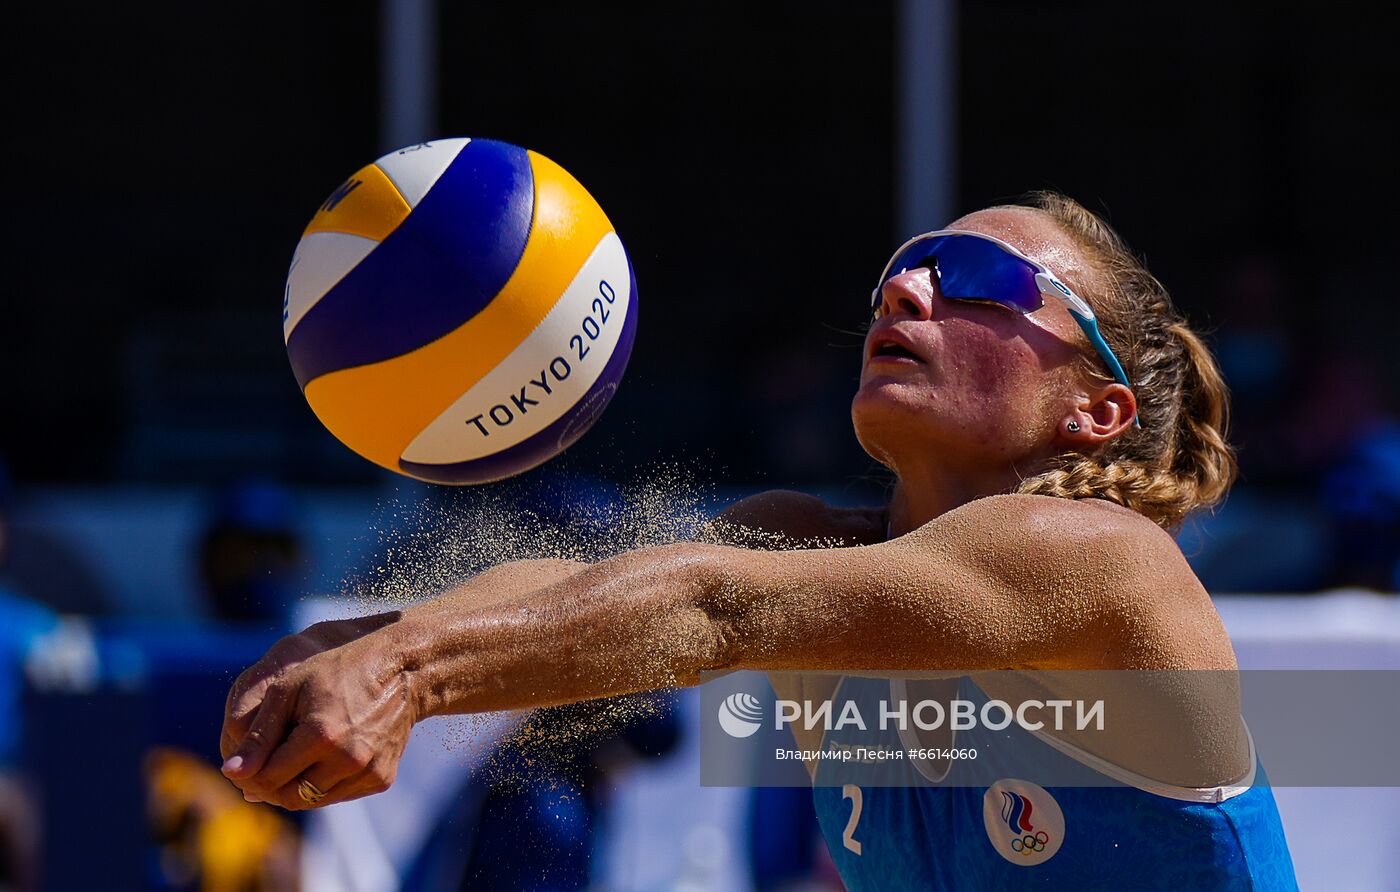 Олимпиада-2020. Пляжный волейбол. Женщины. Макрогузова/Холомина - Граудиня/Кравченок